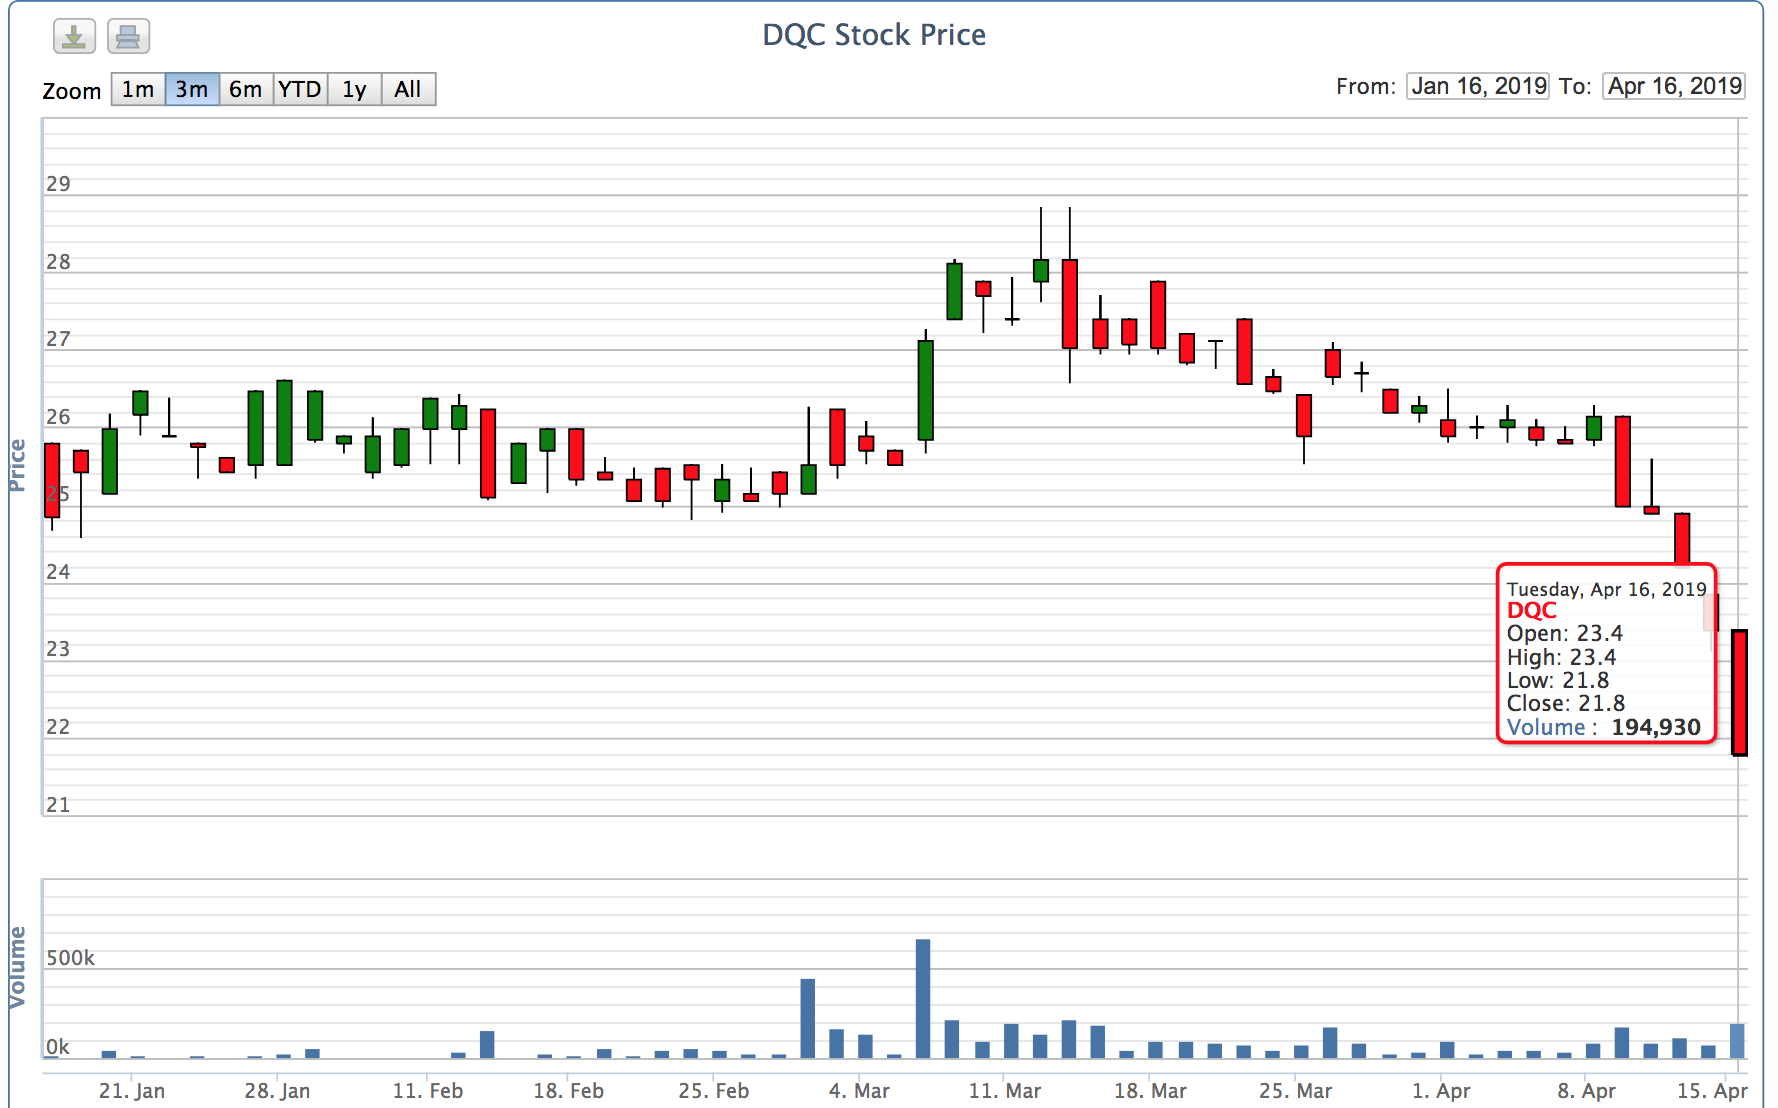 Cổ phiếu Điện Quang DQC giảm liên tiếp trong những phiên gần đây